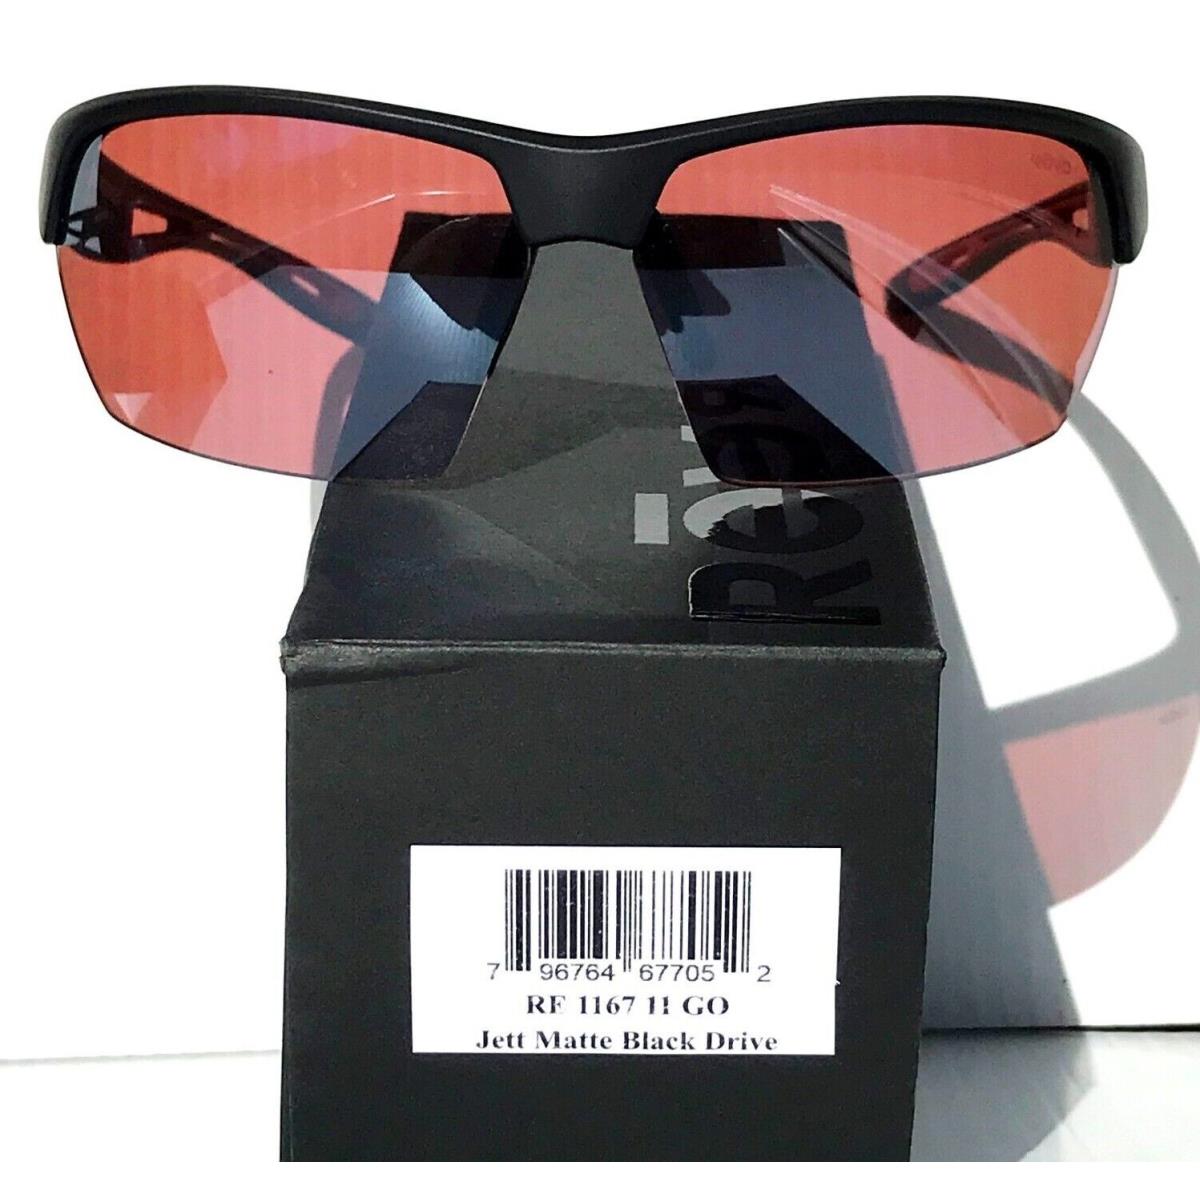 Revo sunglasses JETT - Black Frame, Red Lens